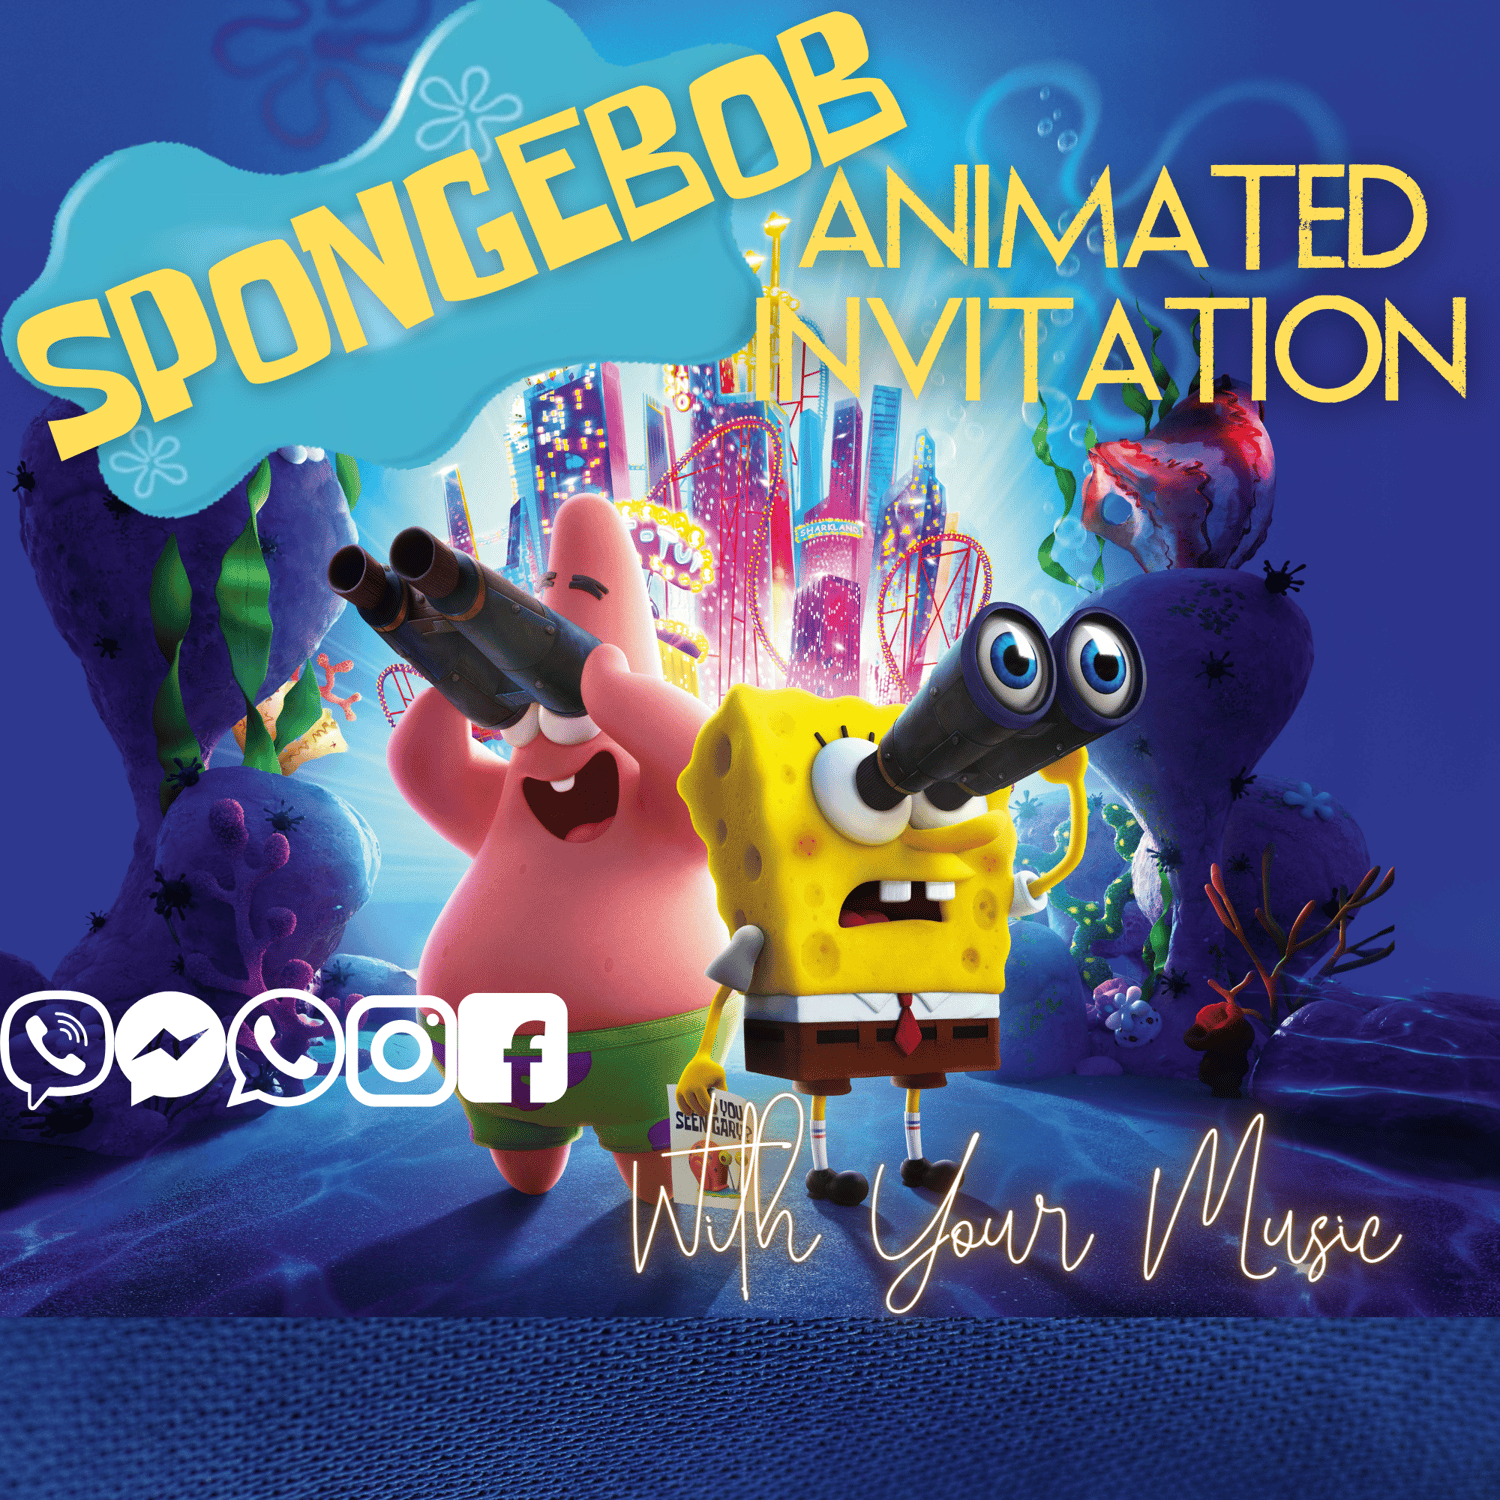 SpongeBob Digital Video Invitation